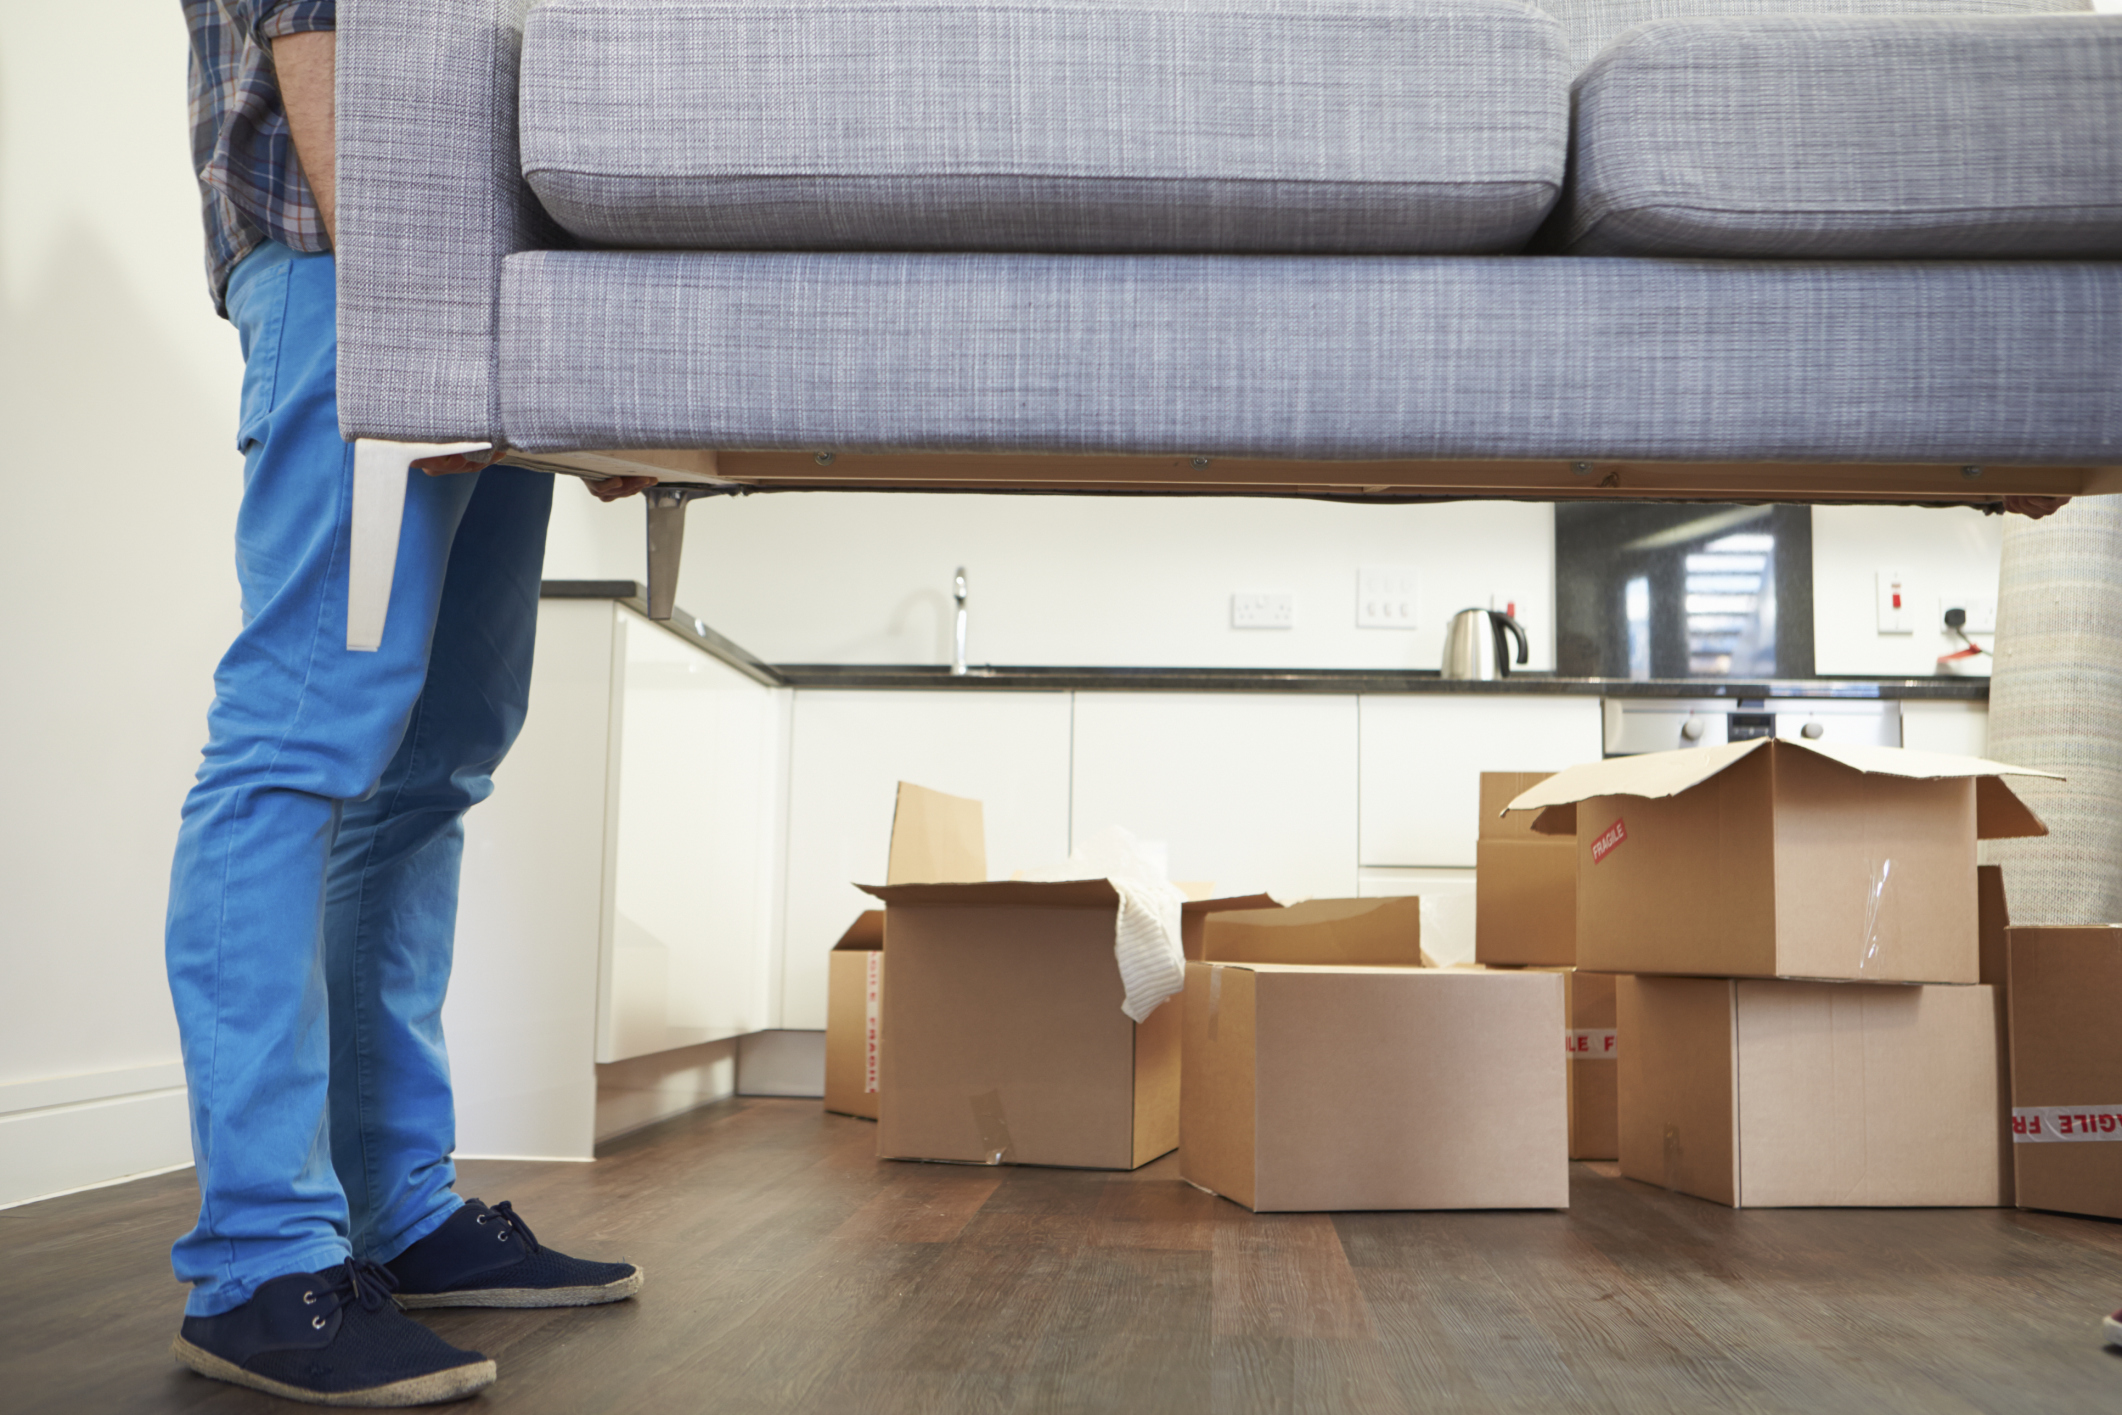 Грузоперевозки Тюмень домашний переезд выносят диван и коробки